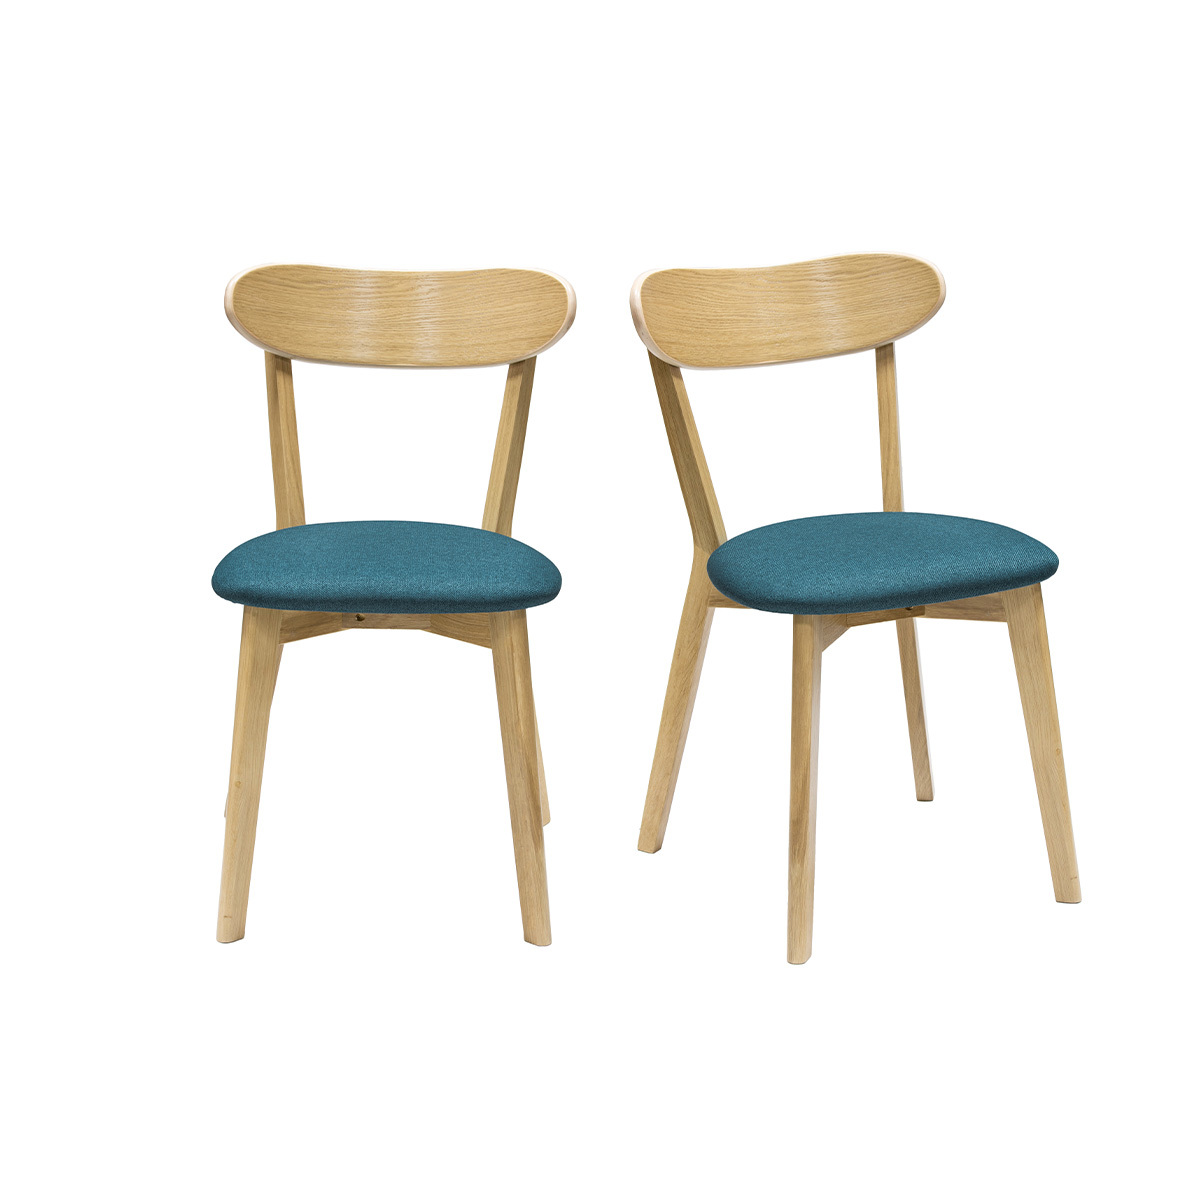 Chaises vintage chêne et assise gris bleu paon (lot de 2) DOVE vue1